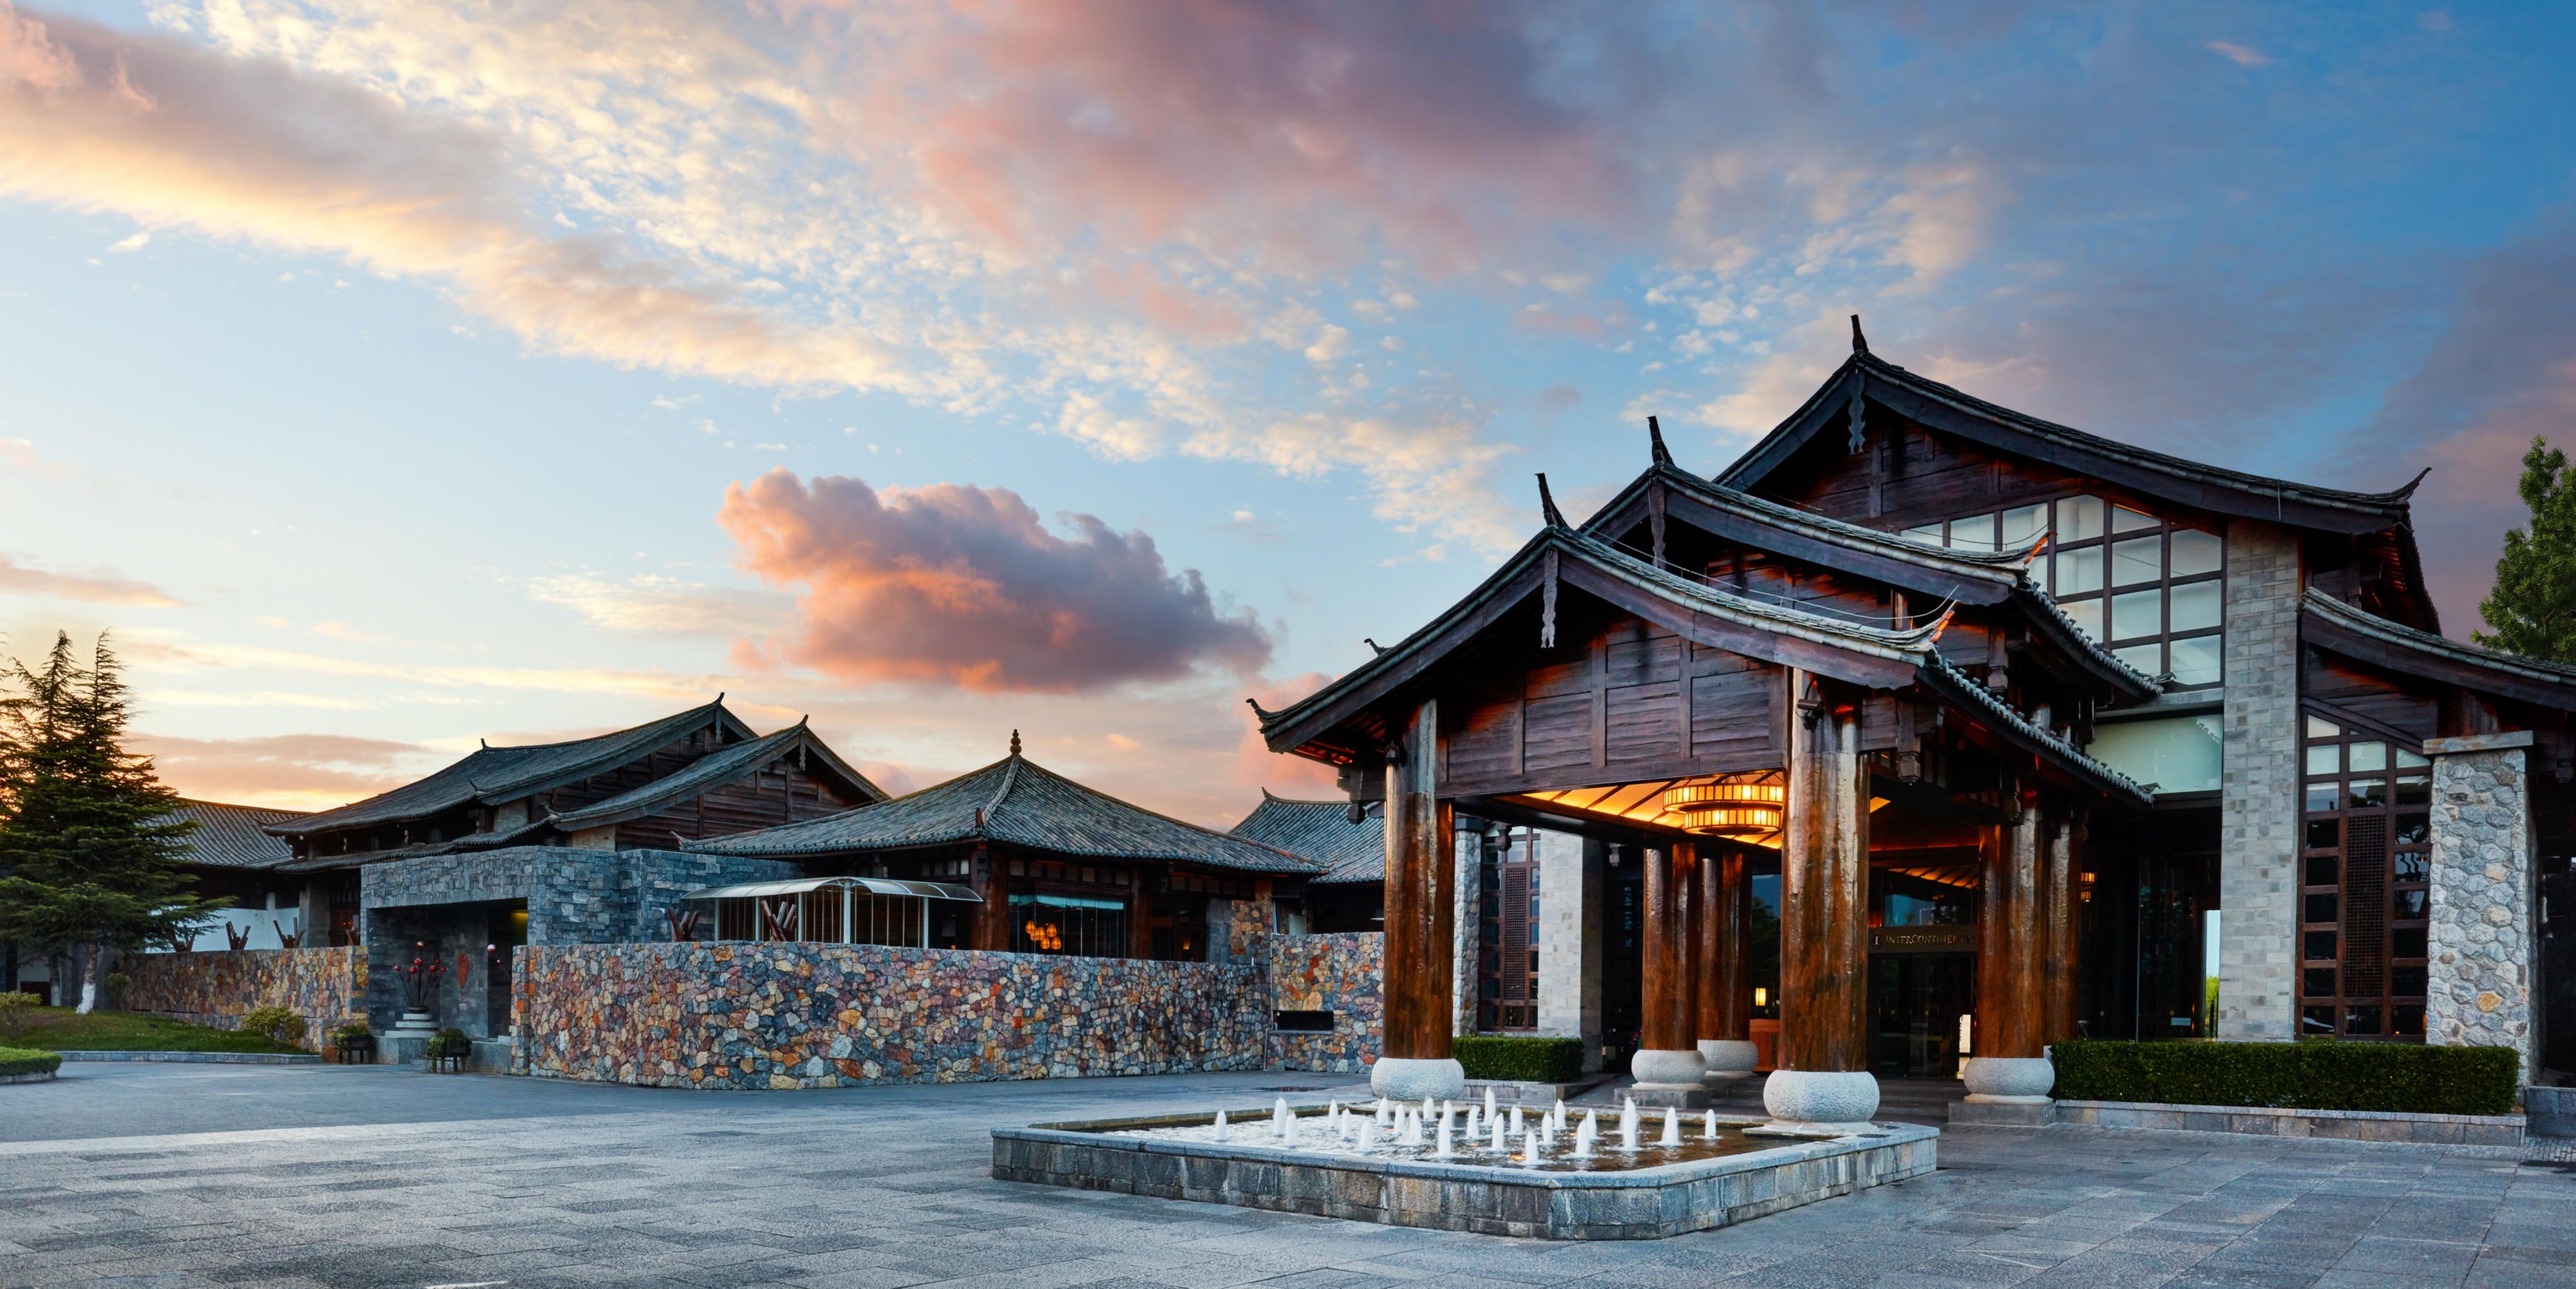 丽江和府洲际度假酒店图片